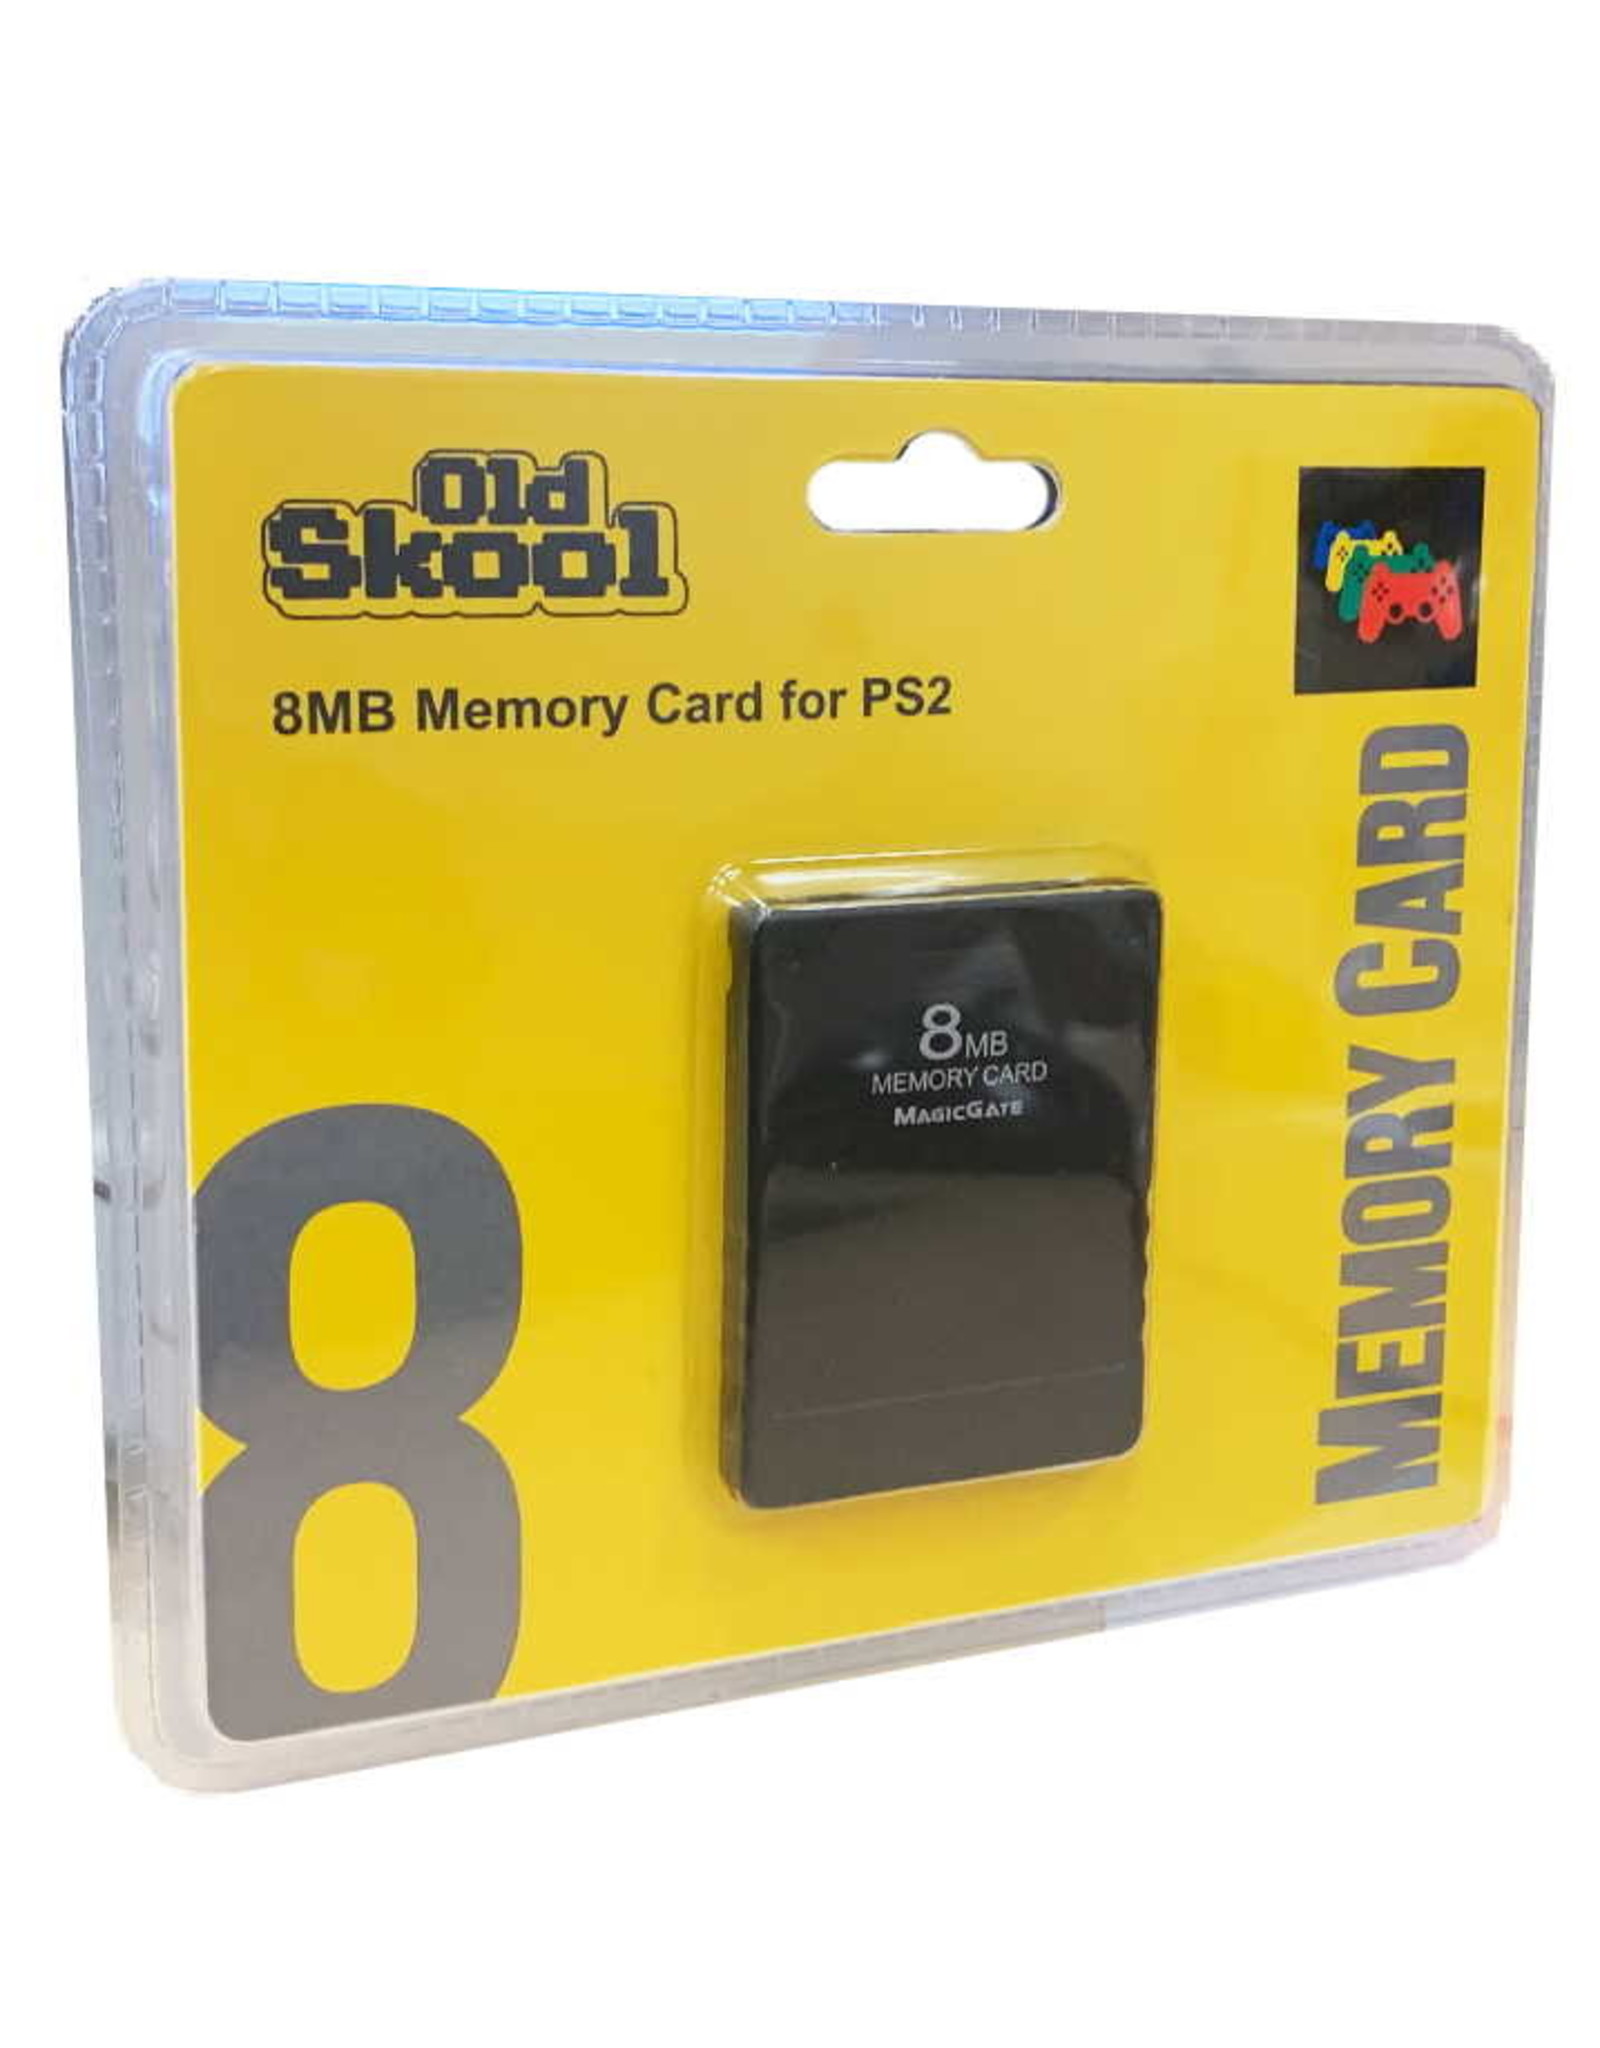 ps2 card memory